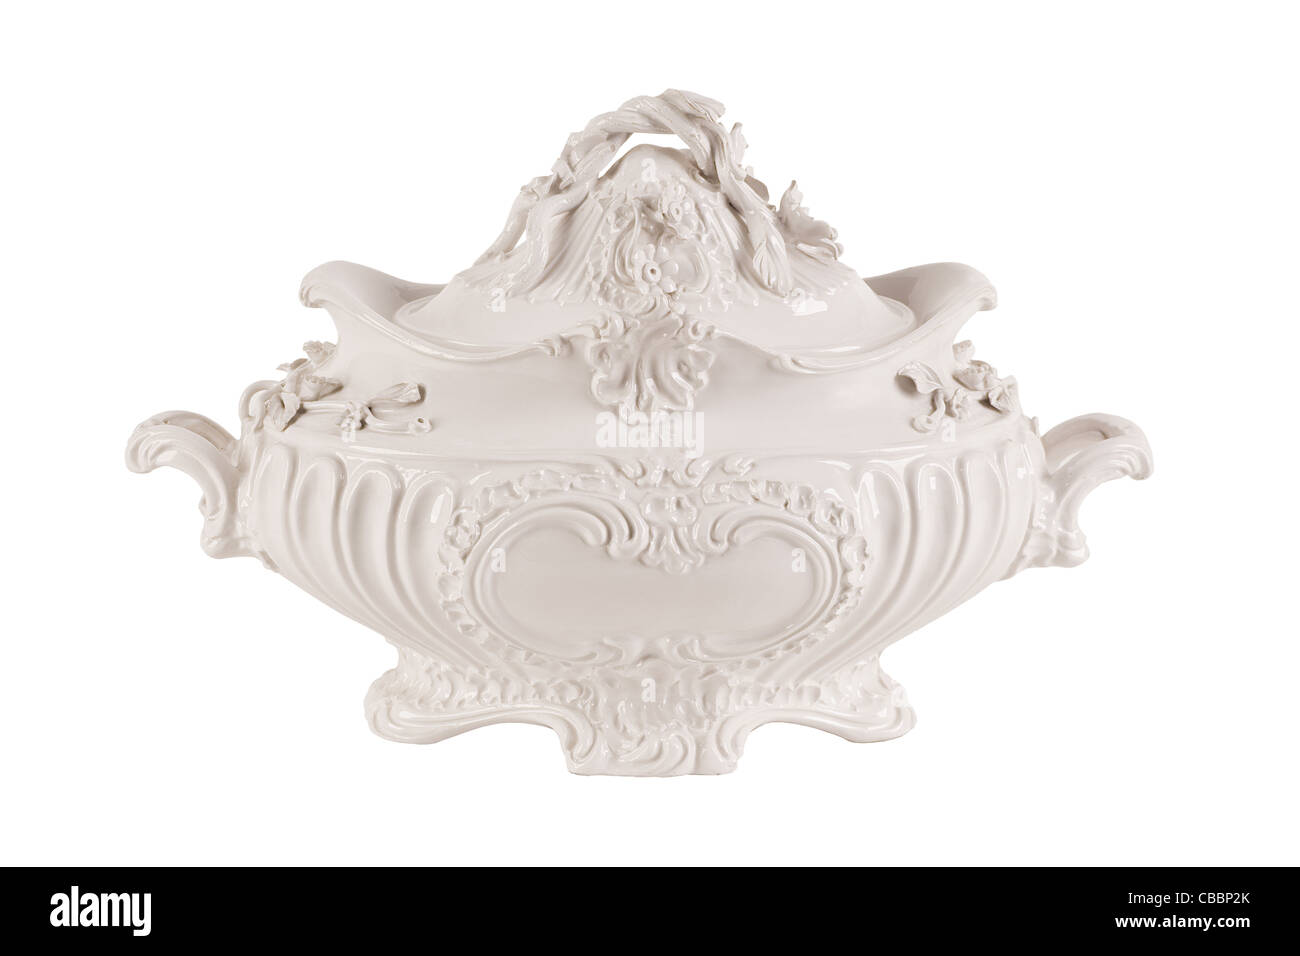 Ancienne soupière en porcelaine, décor riche en style baroque Photo Stock -  Alamy